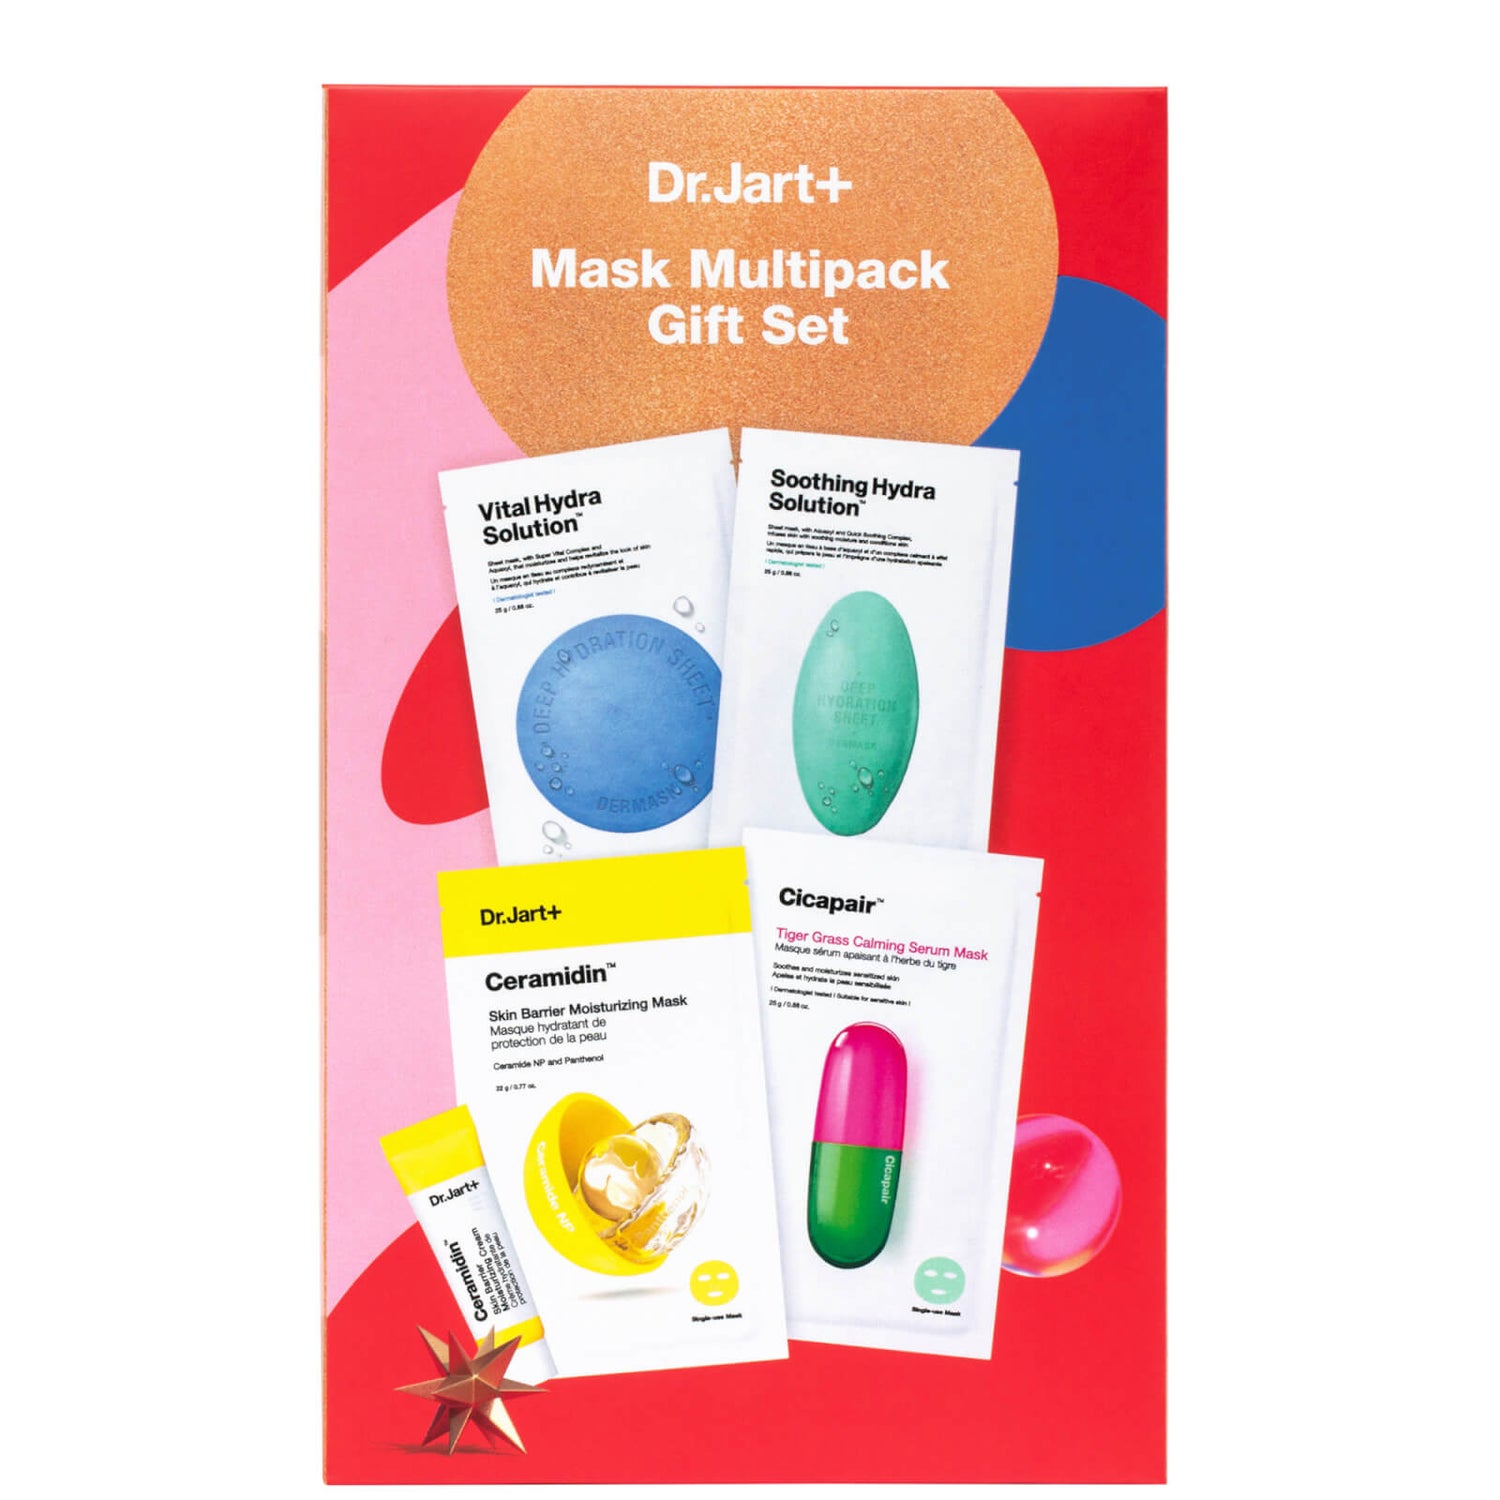 Dr.Jart+ Mask Multipack Gift Set (Worth £29.00)